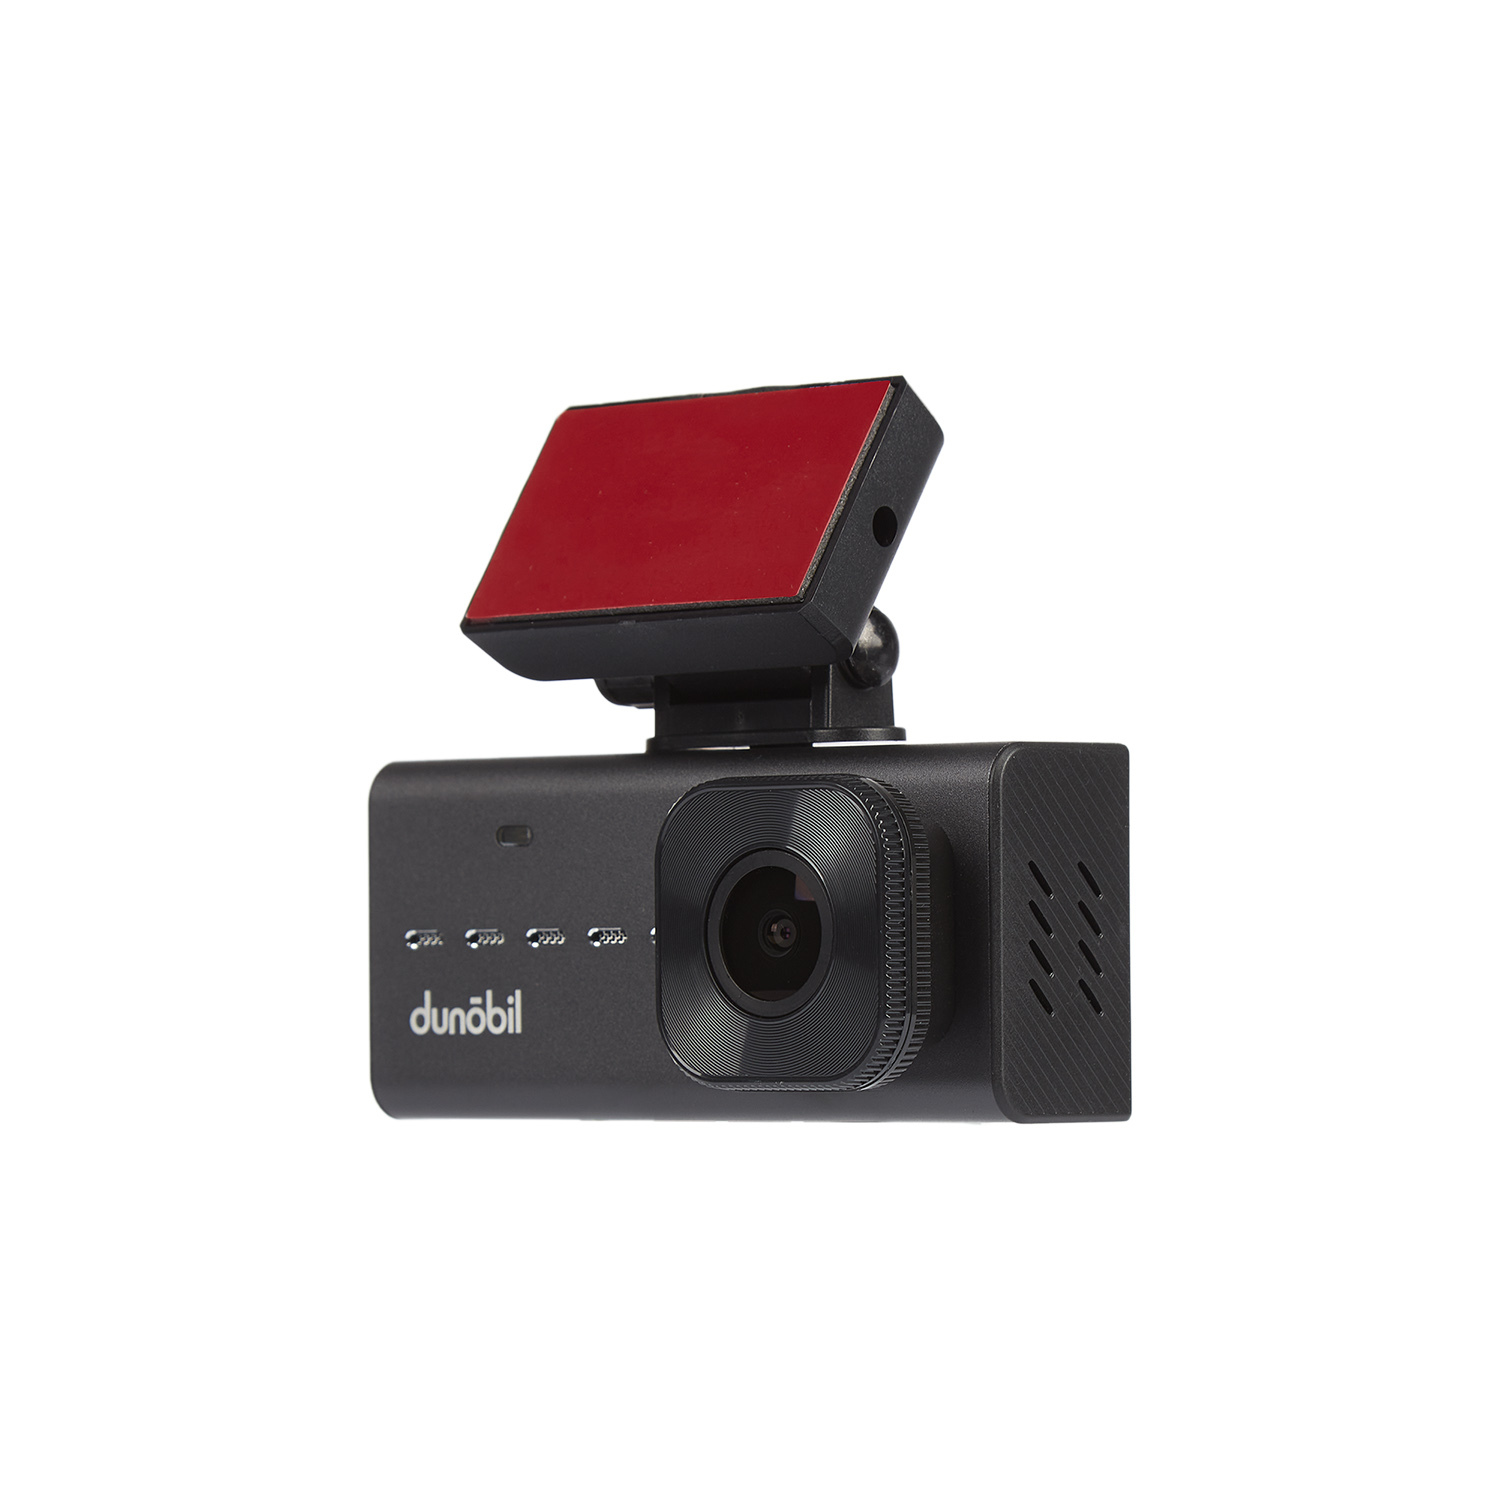 Видеорегистратор с выносными камерами Dunobil Aurora Duo, 2 камеры, 1920x1080 25 к/с, 140°, G-сенсор, microSD (microSDHC) (Dunobil-Aurora-Duo)